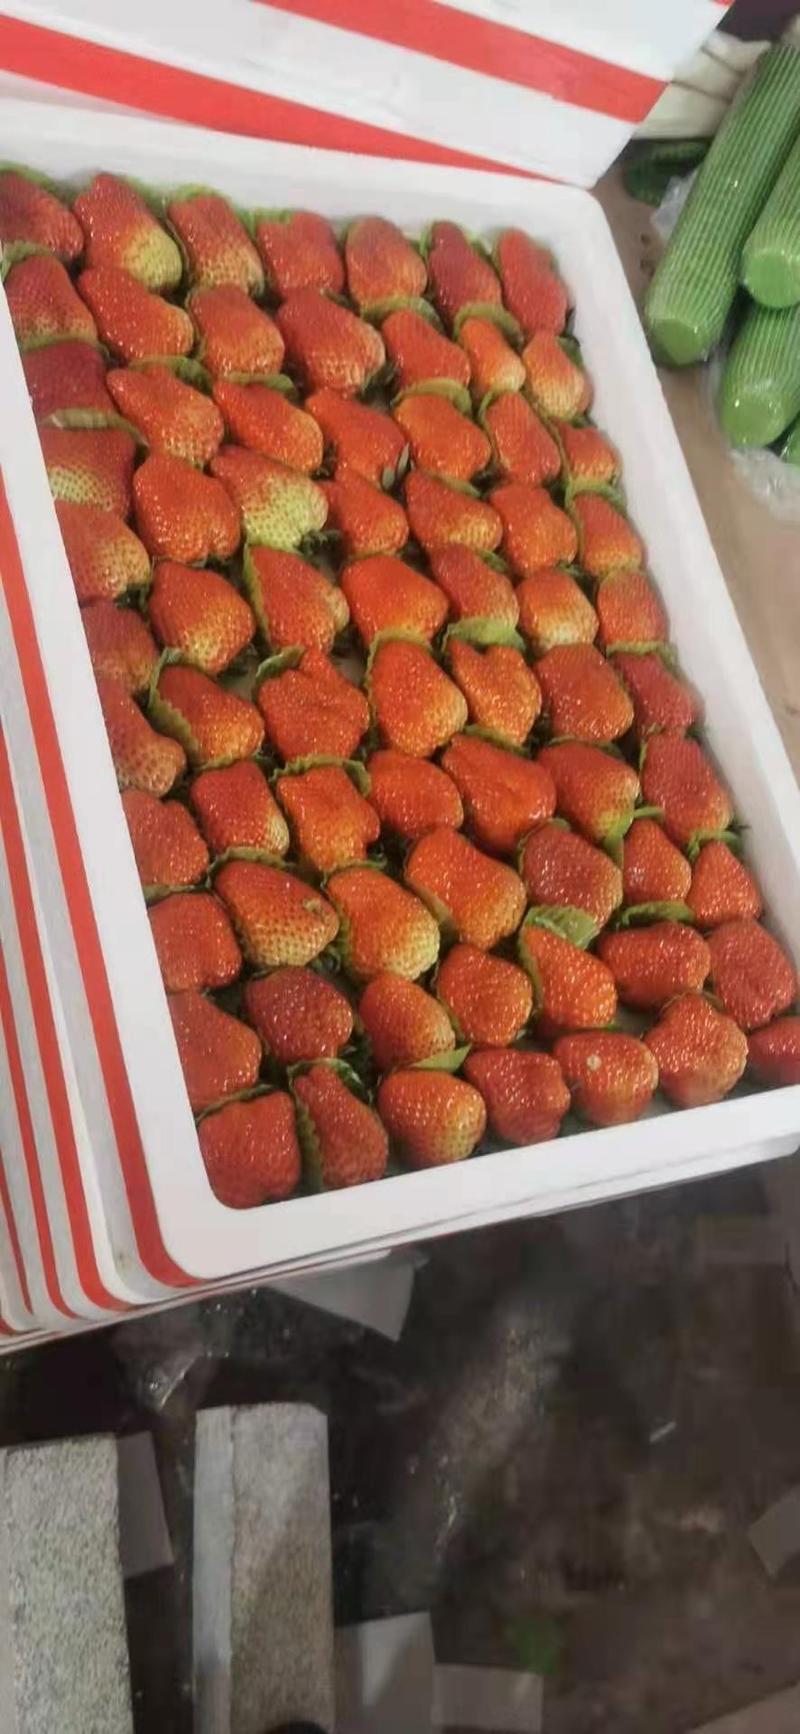 安徽阜阳奶油天仙醉草莓代办与零售承接广大新老客户